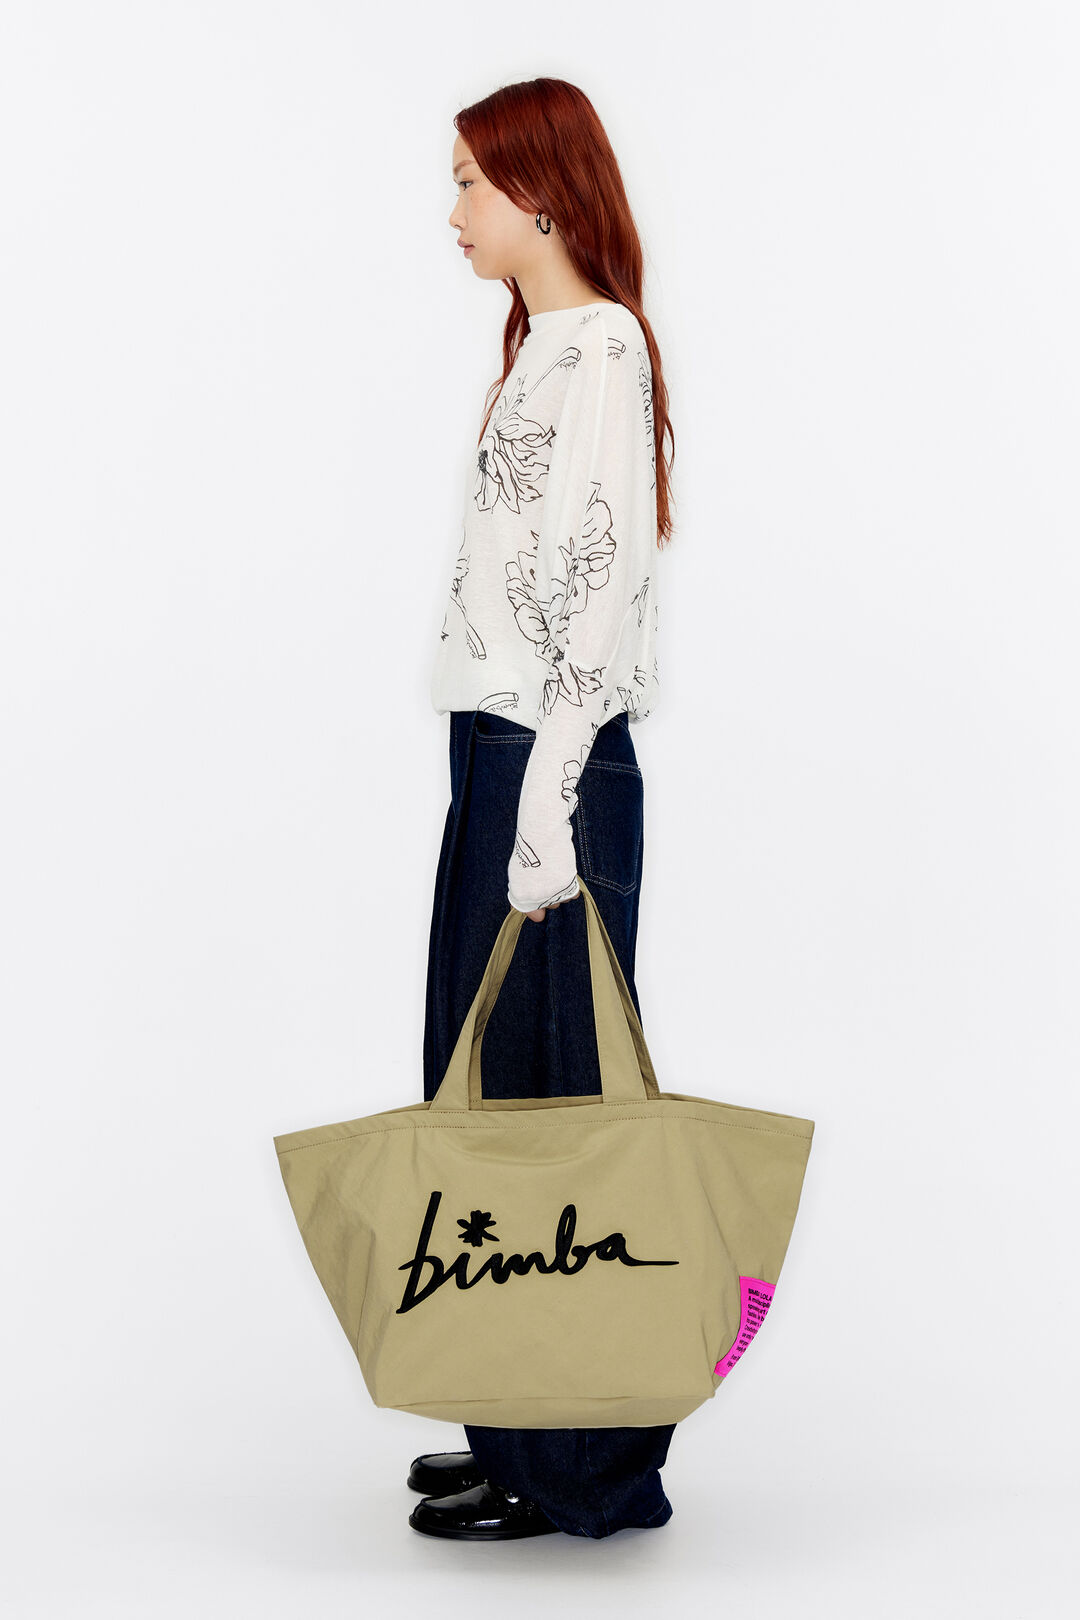 Shop bimba & lola Women's Bags